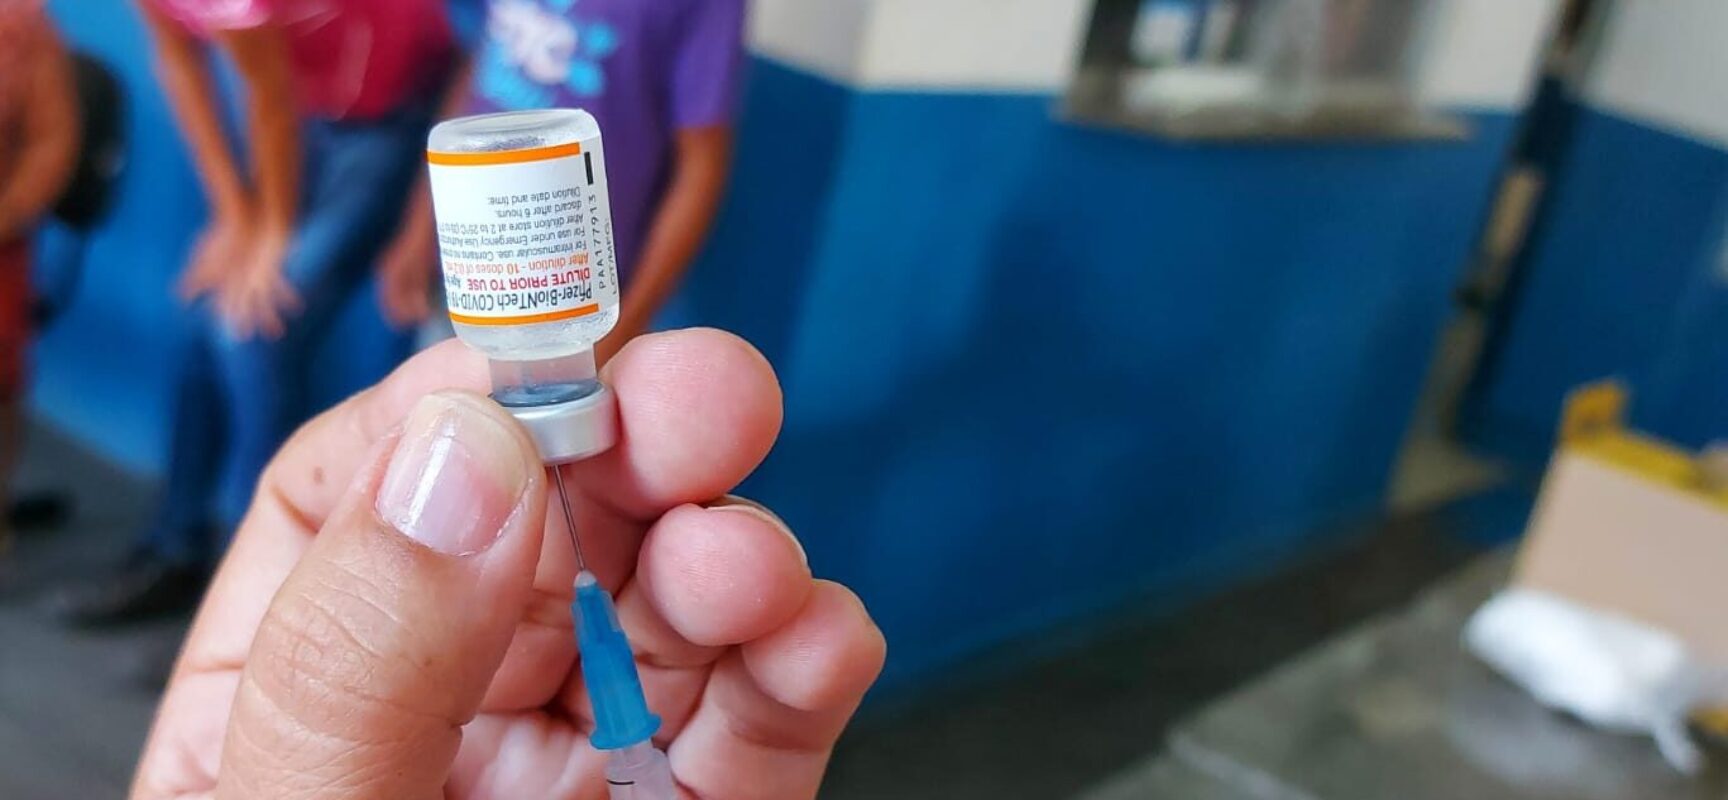 Secretaria Municipal de Saúde divulga calendário de vacinação contra Covid-19 dos últimos dias de março em Itabuna